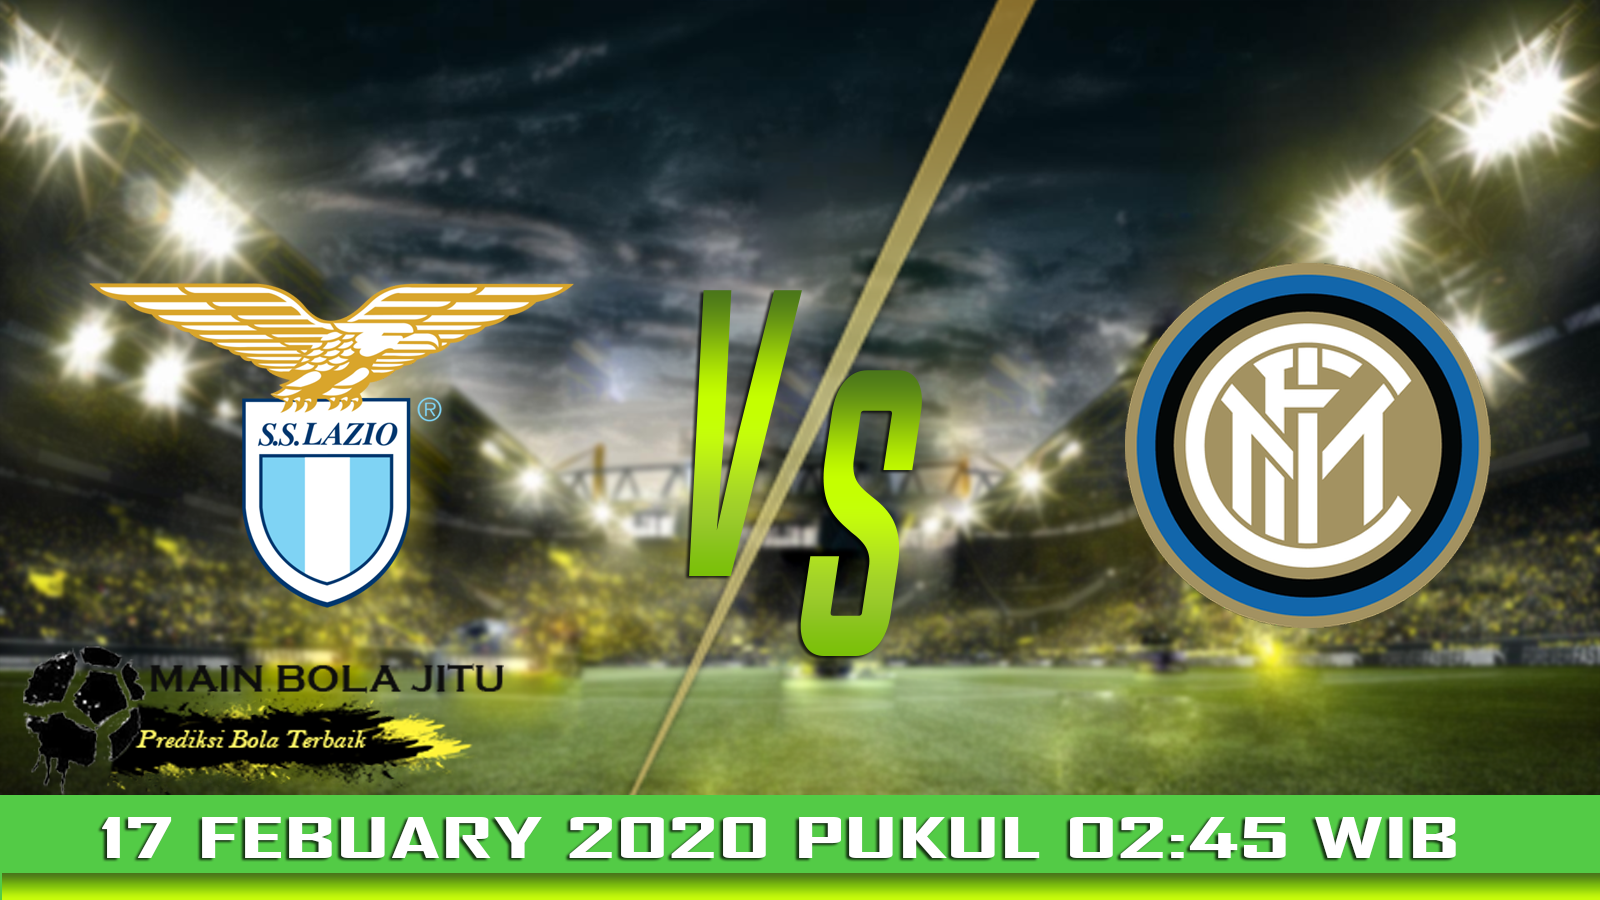 Prediksi Skor Lazio vs Inter Milan tanggal 17-02-2020